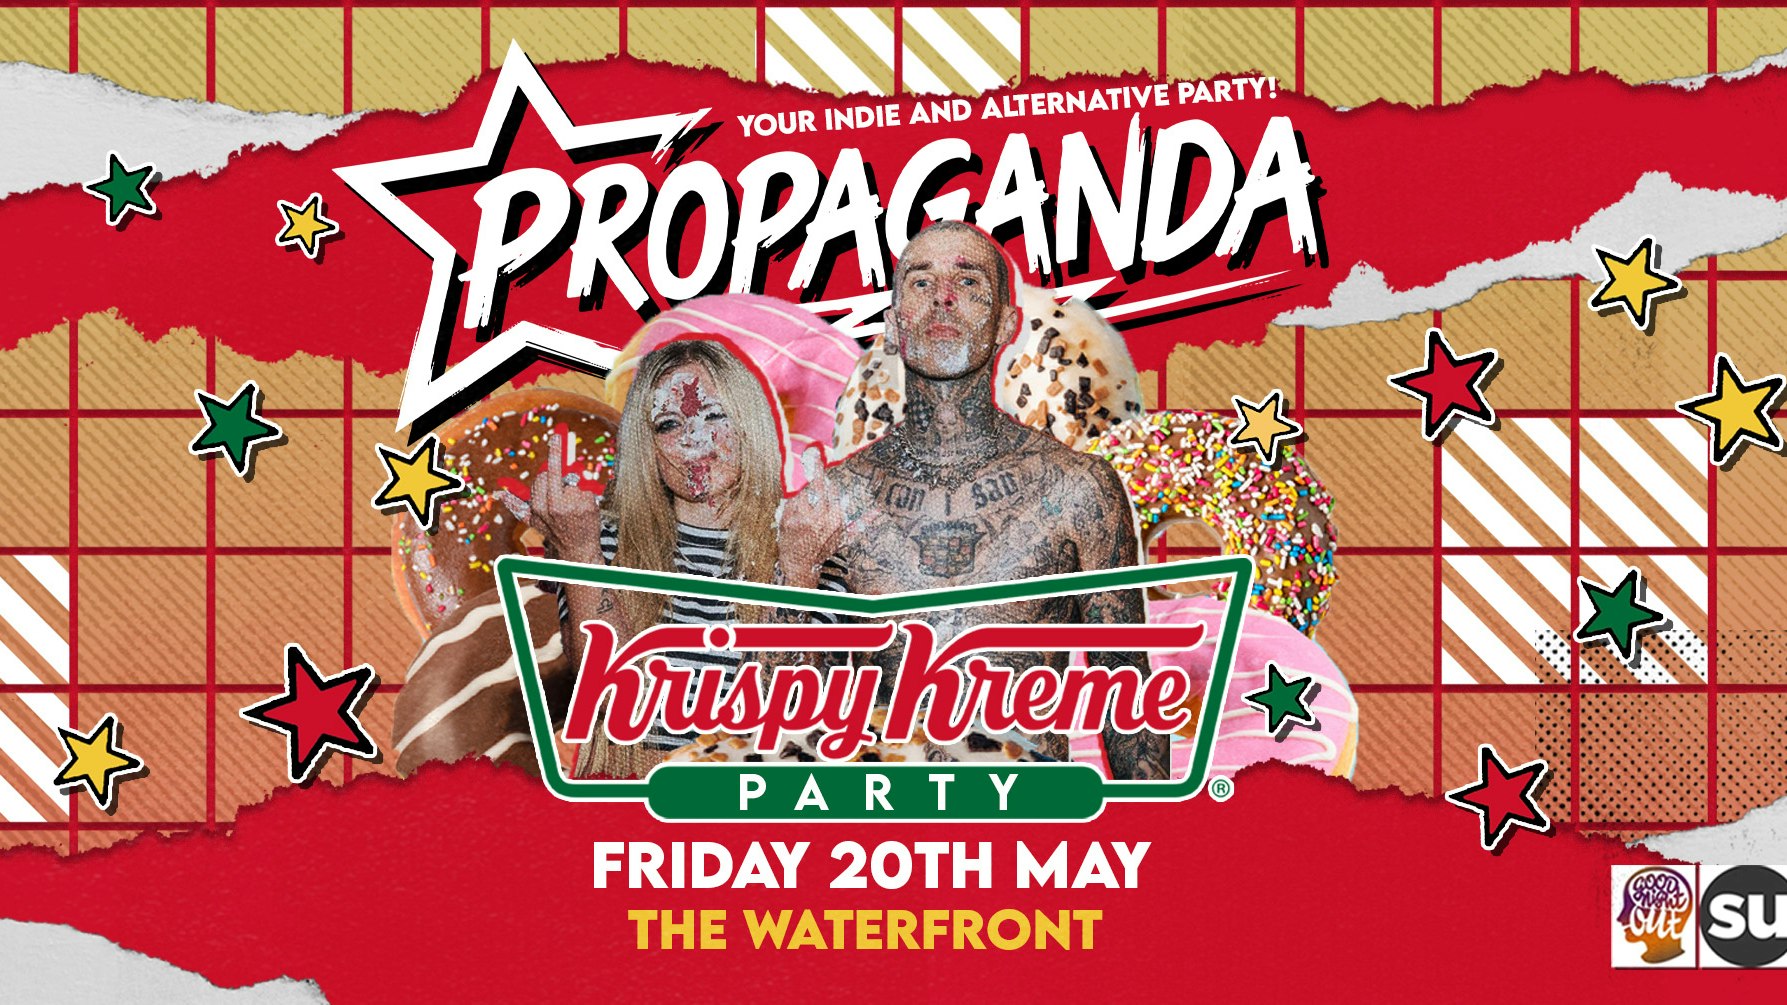 Propaganda Norwich – Krispy Kreme Party!